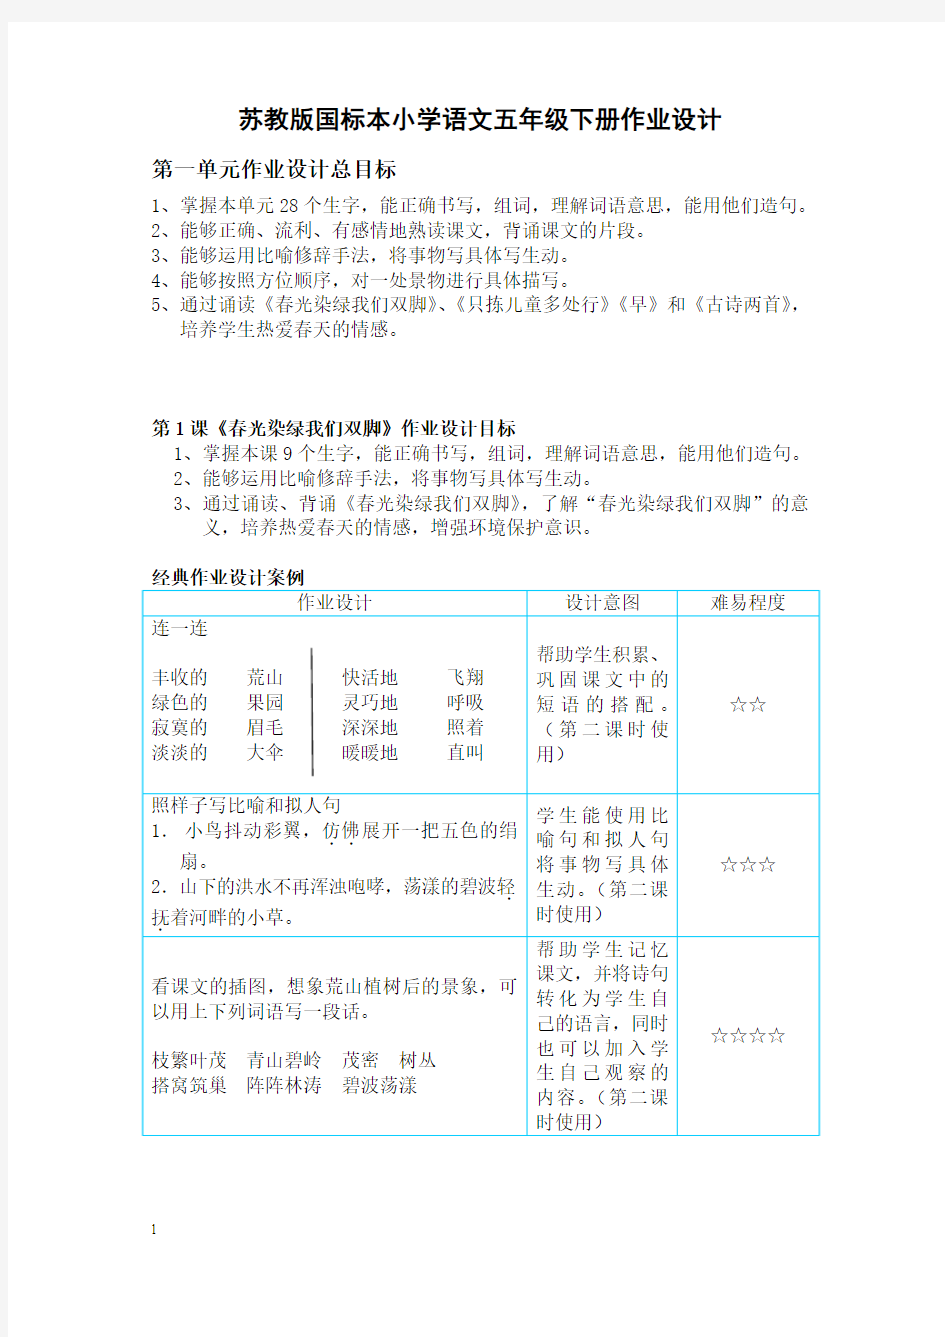 苏教版国标本小学语文五年级下册作业设计